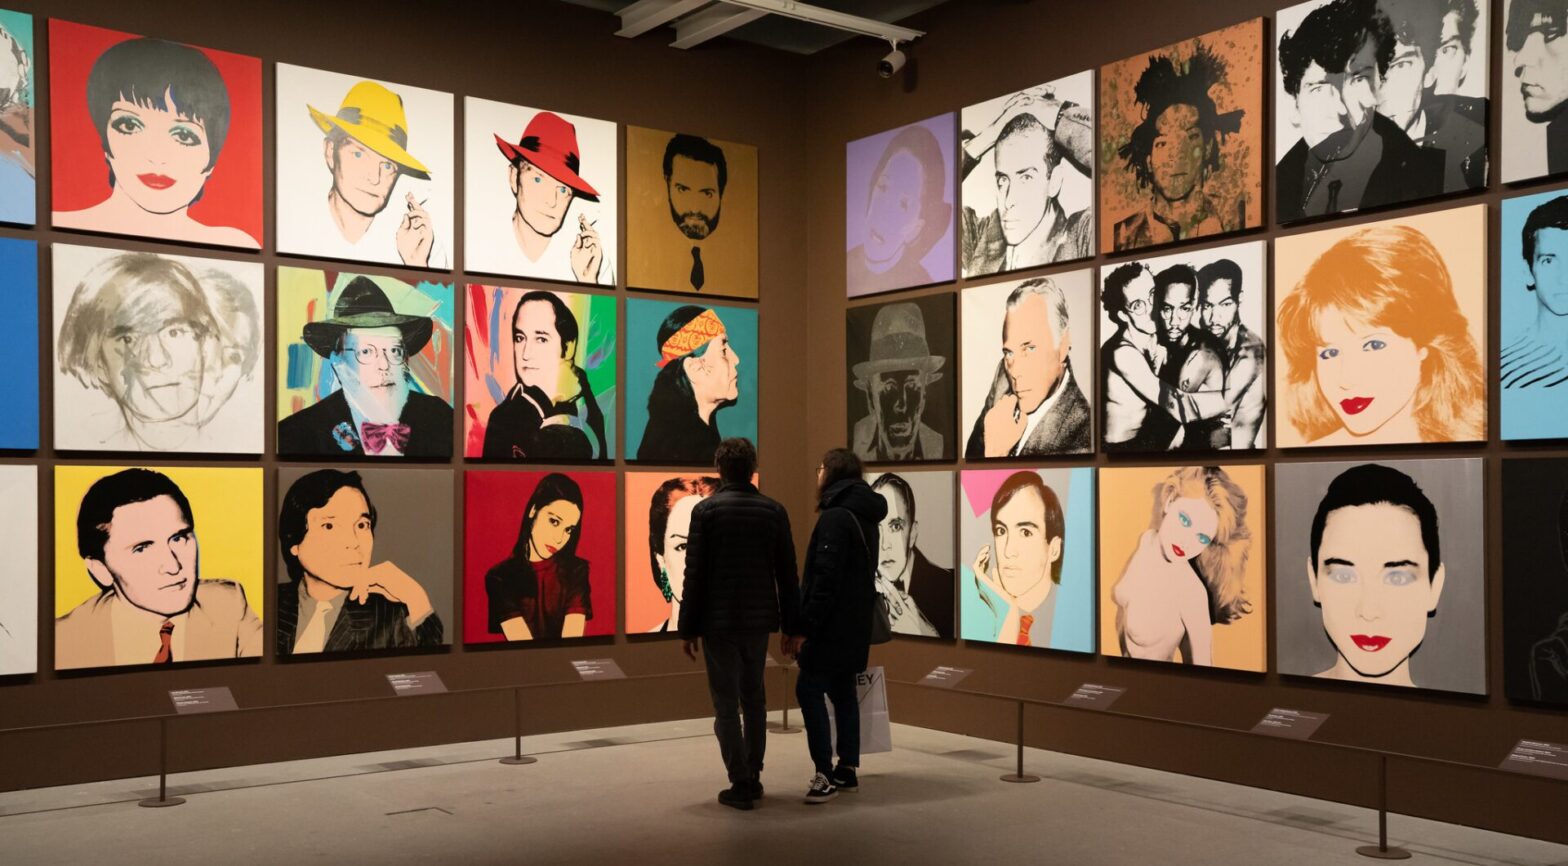 Comment une affaire jugeant le droit d'auteur d'Andy Warhol pourrait bouleverser l'IA générative